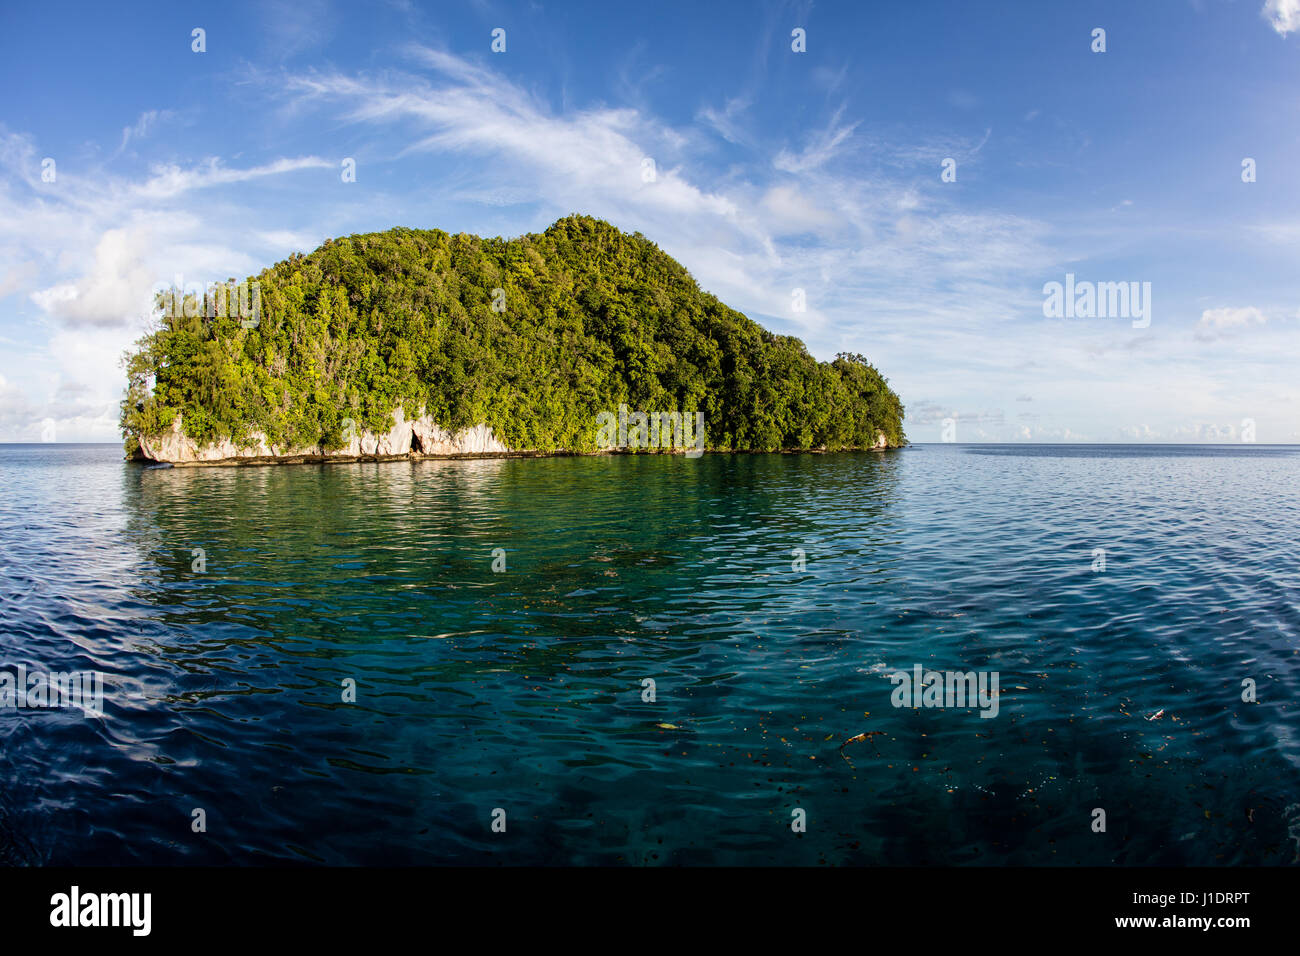 Ruhige Gewässern umgeben eine Kalksteininsel in die Republik Palau. Dieses tropische Land ist ein beliebtes Ziel für Taucher und Schnorchler. Stockfoto